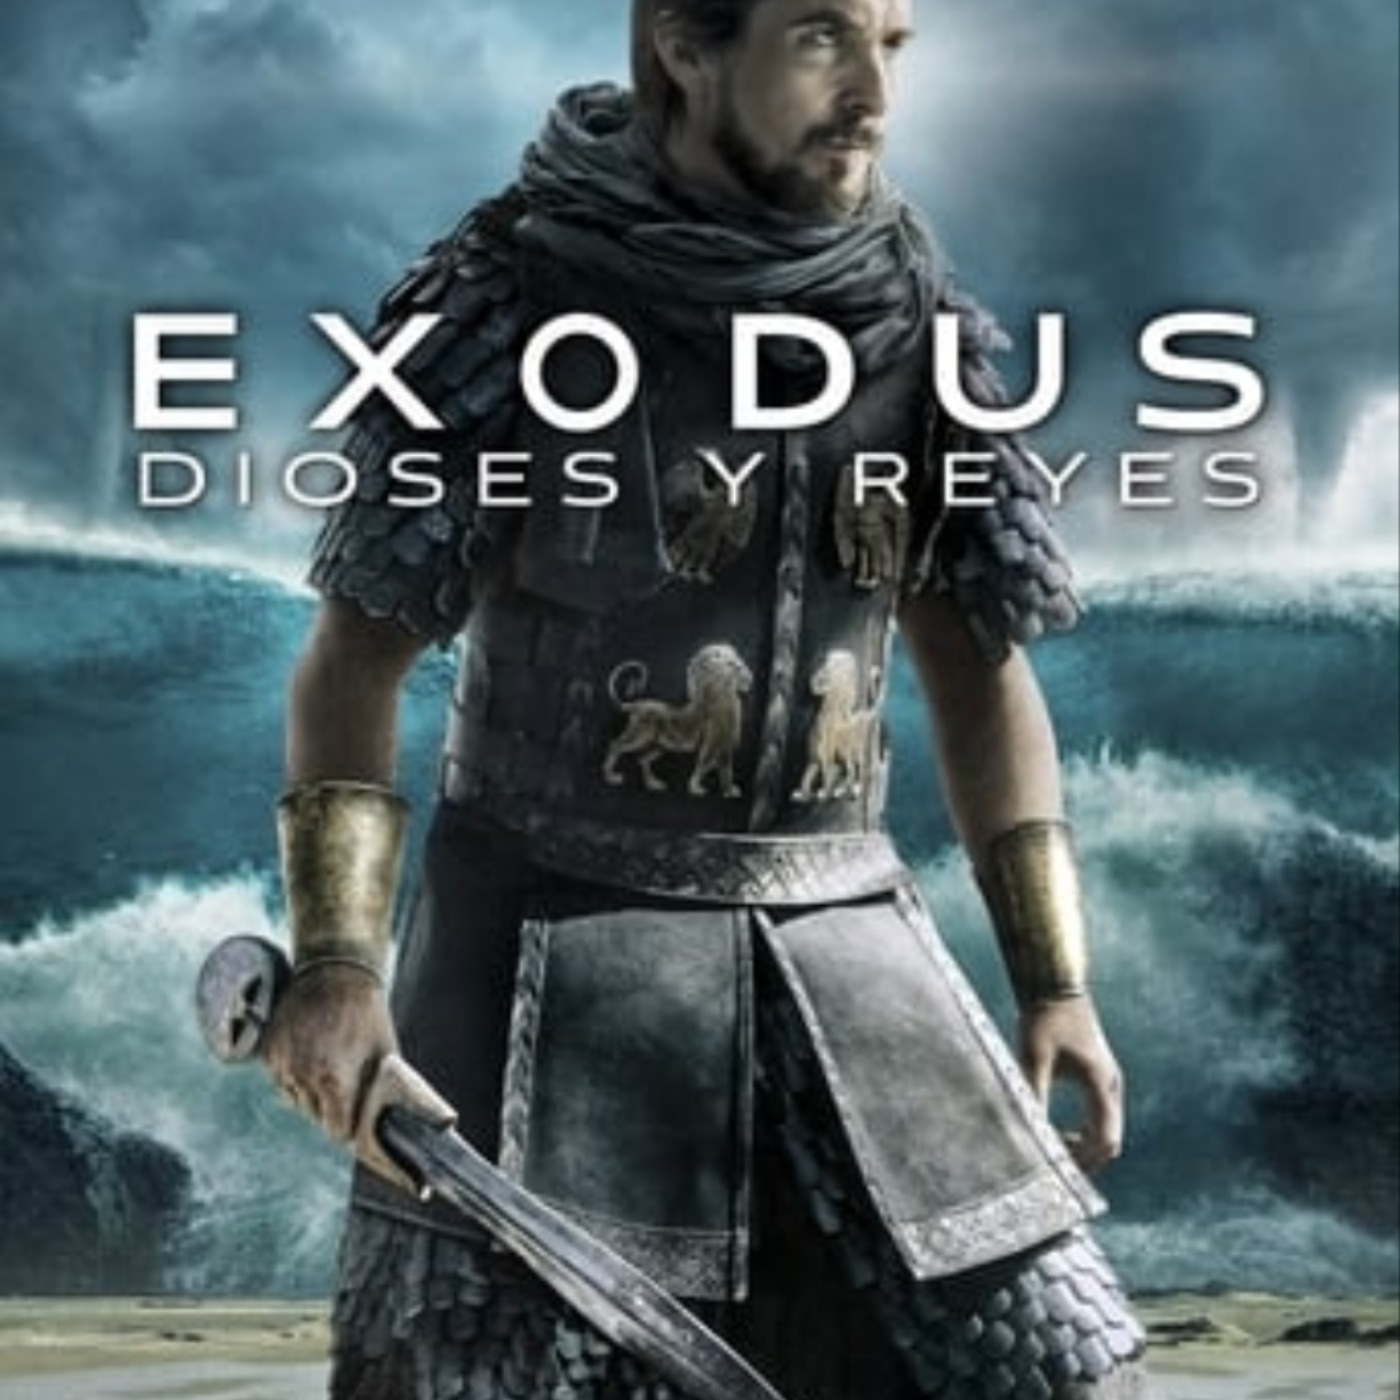 Ver Exodus: Dioses y reyes 2014 online gratis en español y latino | Podcast  on SoundOn